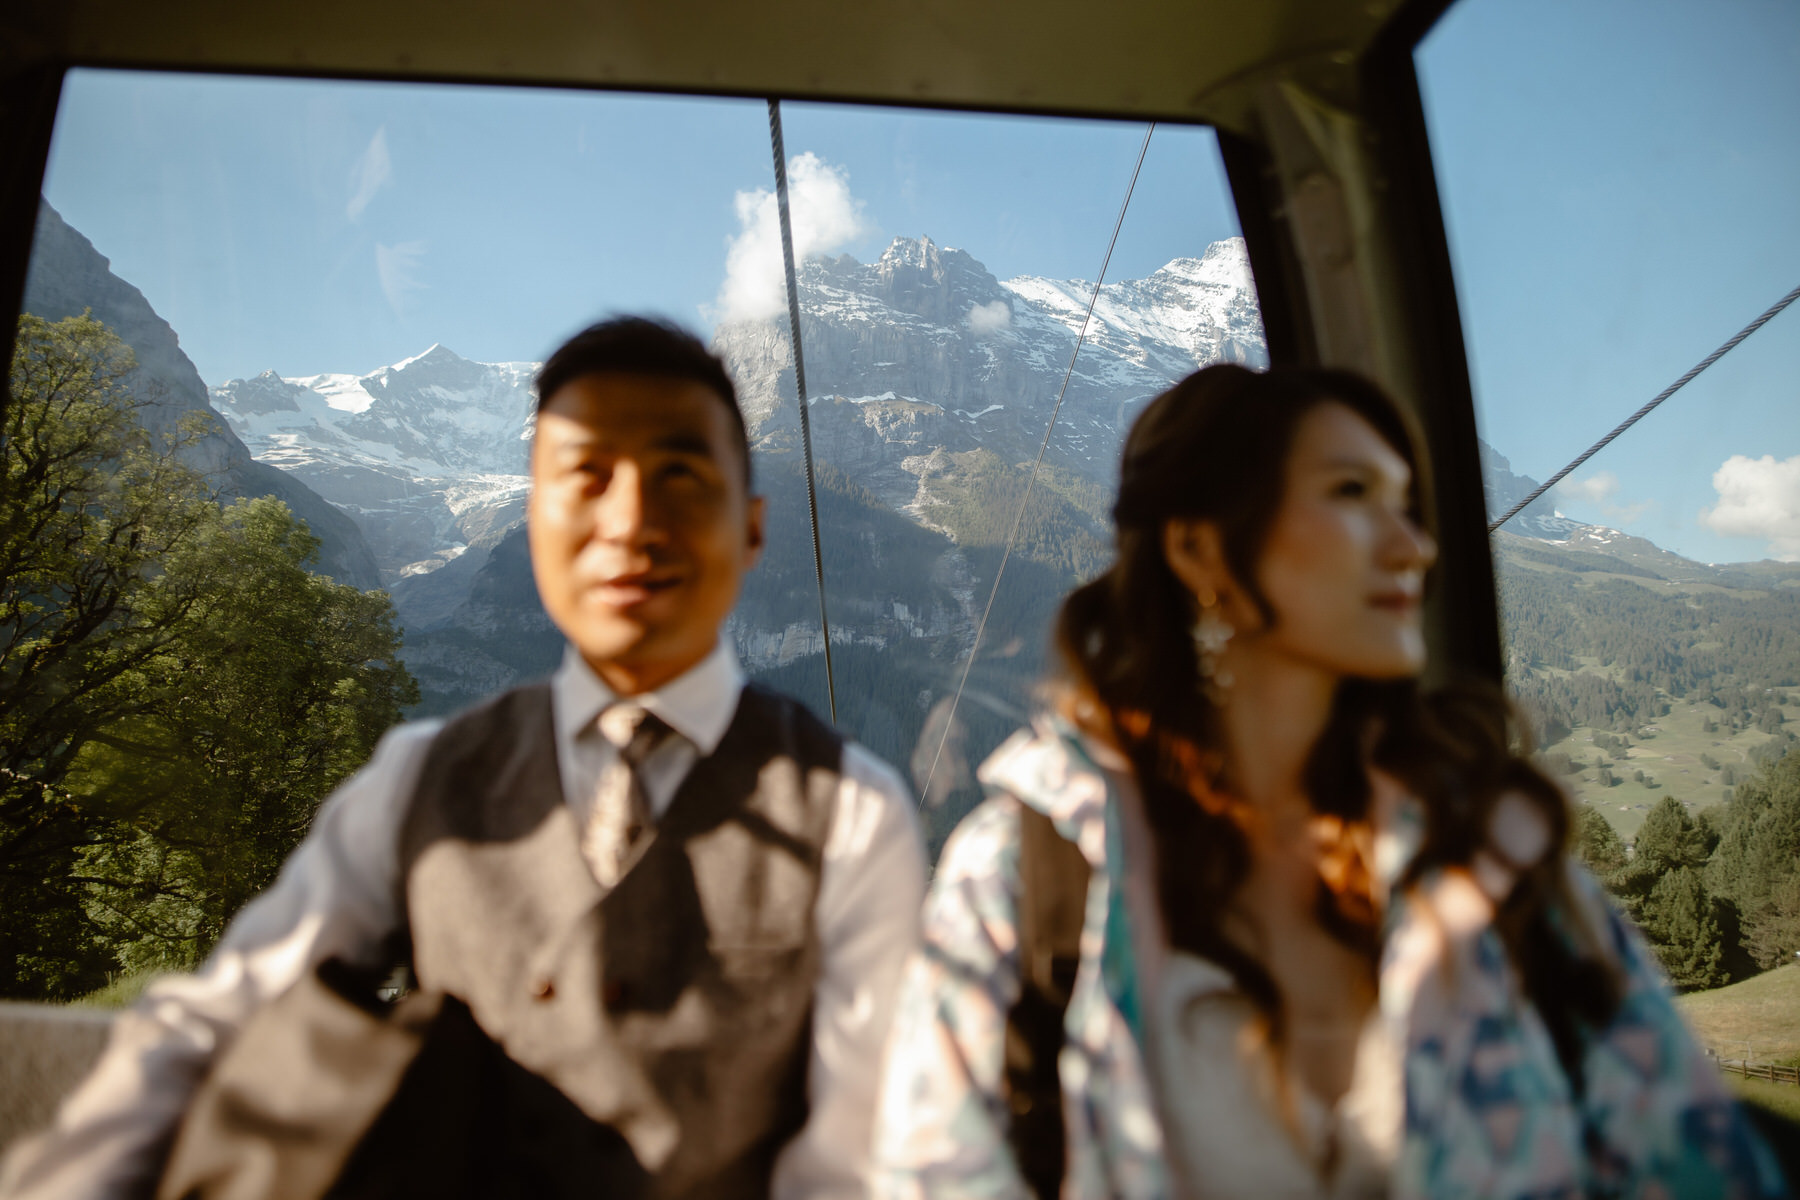 Grindelwald Switzerland Elopement Wedding 91 | Croatia Elopement Photographer and Videographer